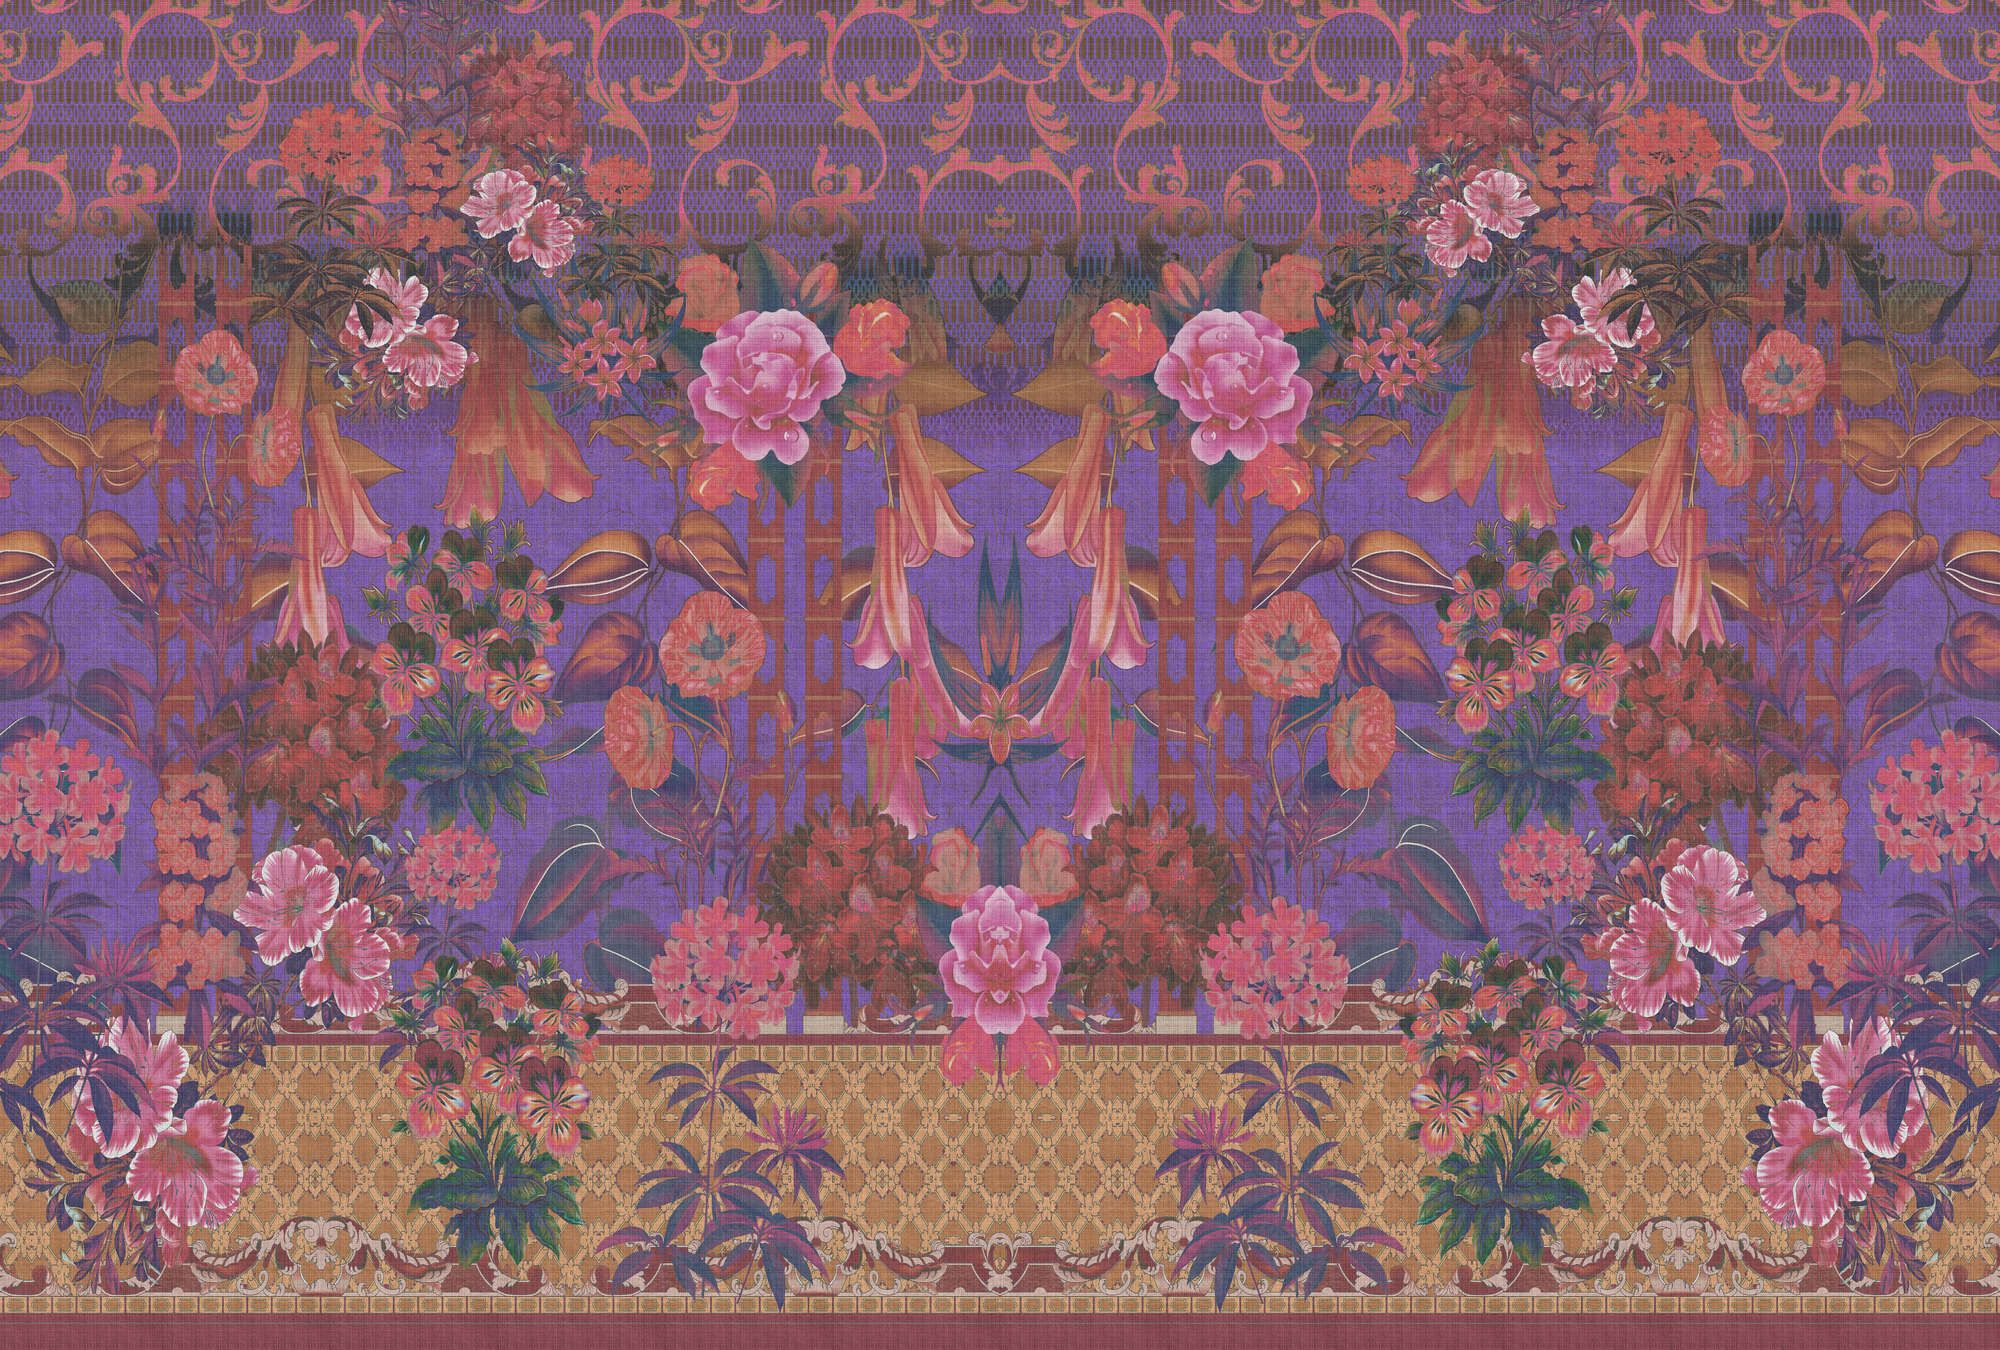             Fotomural »sati 1« - Diseño floral con aspecto de estructura de lino - Violeta | Tela no tejida lisa, ligeramente nacarada y brillante
        